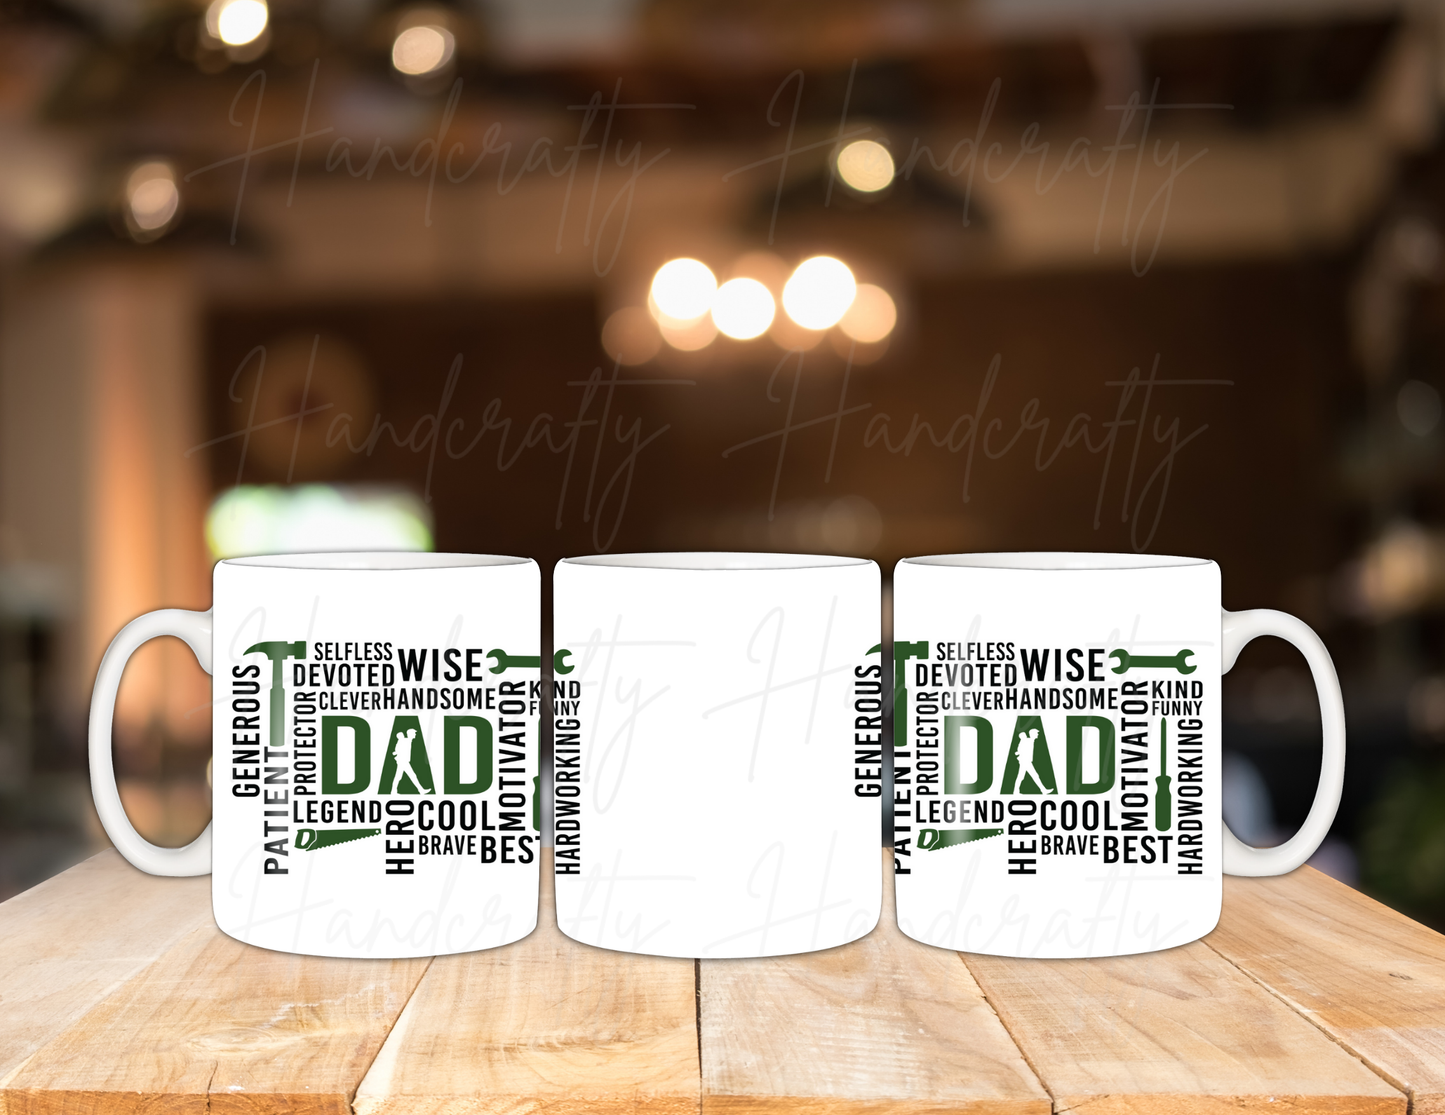 Father's Day mugs, Father's Day gifts, Custom Father's Day mugs, Personalized Father's Day mugs, Best Father's Day mugs, World's Best Dad mug, Super Dad mug, Best Dad Ever mug, #1 Dad mug, Dad life mug, New Dad mug, Funny Father's Day mug, Inspirational Father's Day mug, Cool Dad mug, Dad joke mug, Grandpa mug, Papa mug, Stepdad mug, Custom message mug for Dad, Name engraved mug for Dad, custom gifts, personalized gift, gift for dad